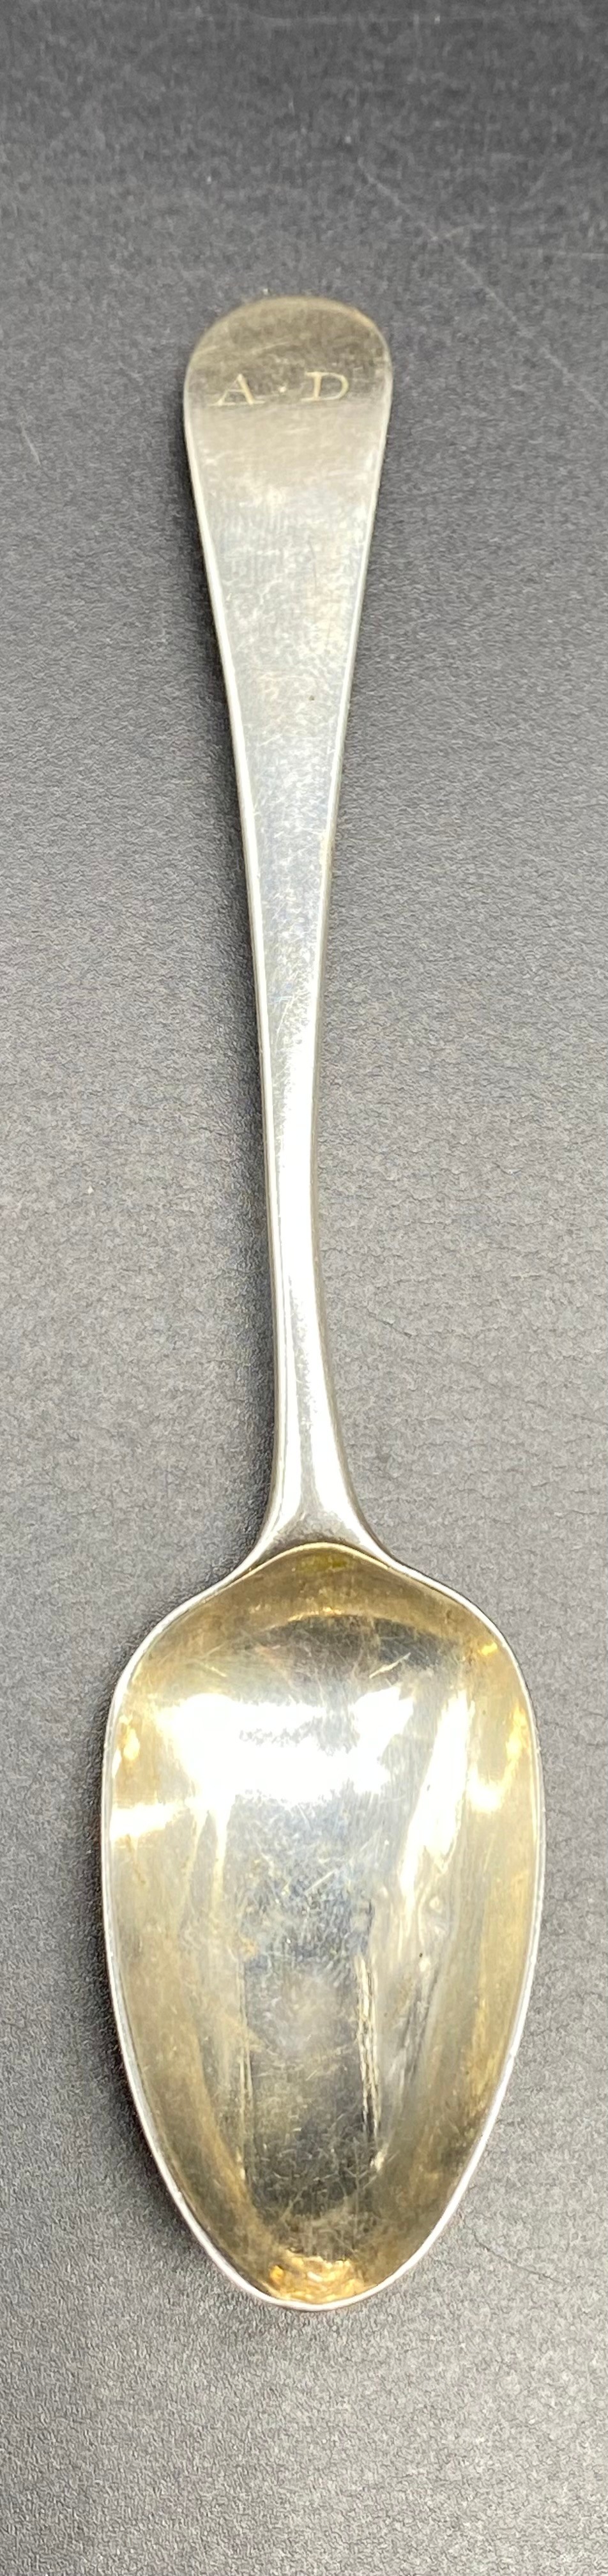 Provincial Scottish Georgian silver desert spoon dated 1820, maker initial AH [28.46] grams Georgian - Image 4 of 6